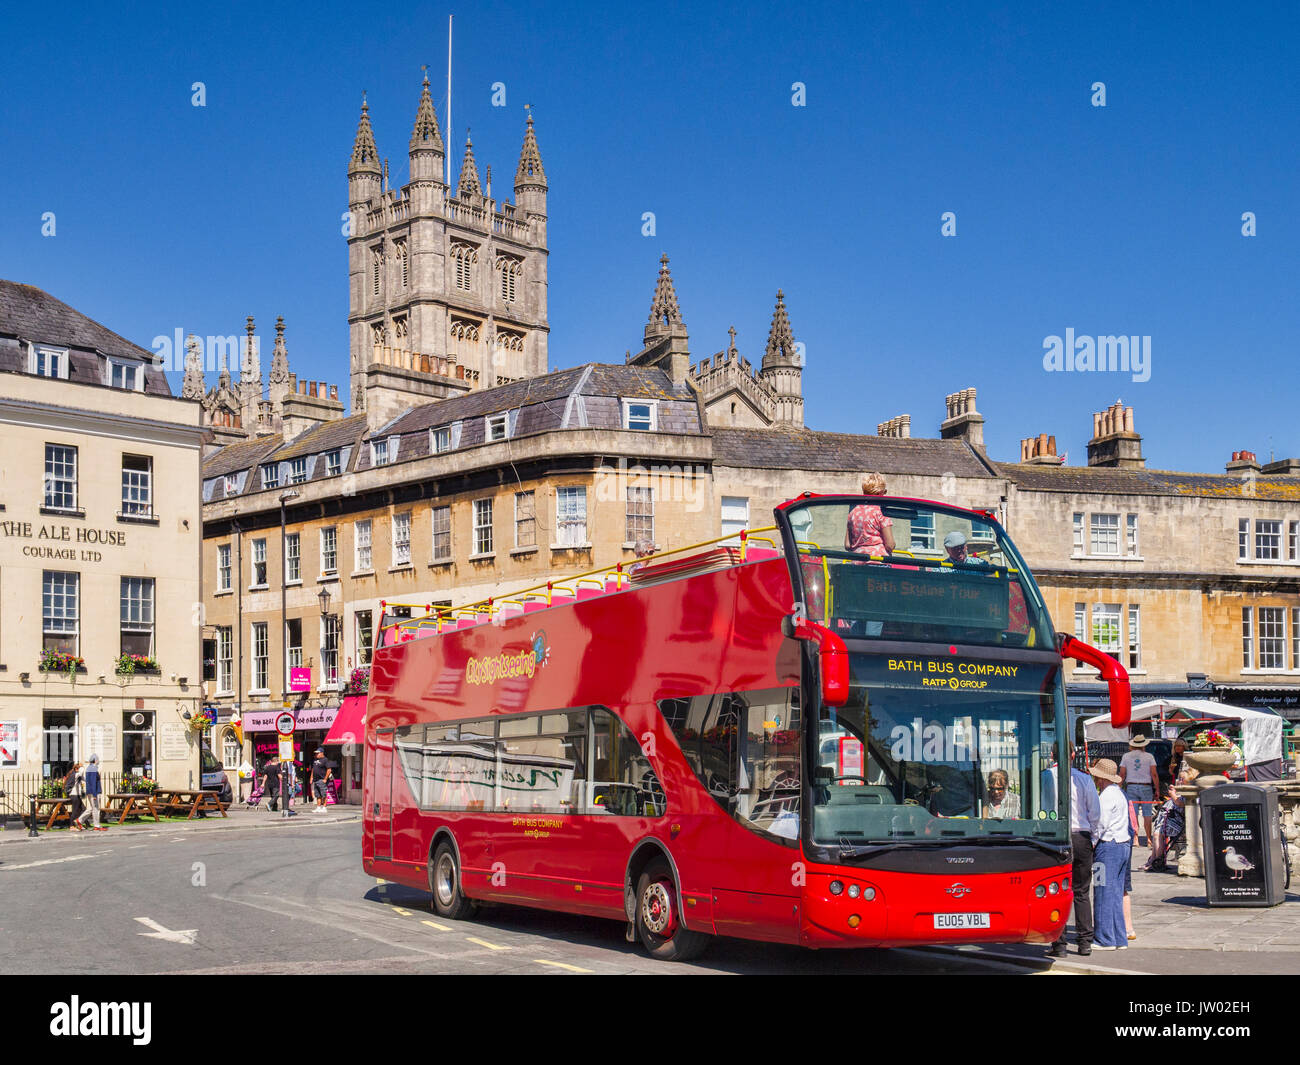 5 Juillet 2017 : Bath, Somerset, England, UK - moderne open top bus à impériale de la compagnie de bus de baignoire, près de l'abbaye de Bath. Banque D'Images